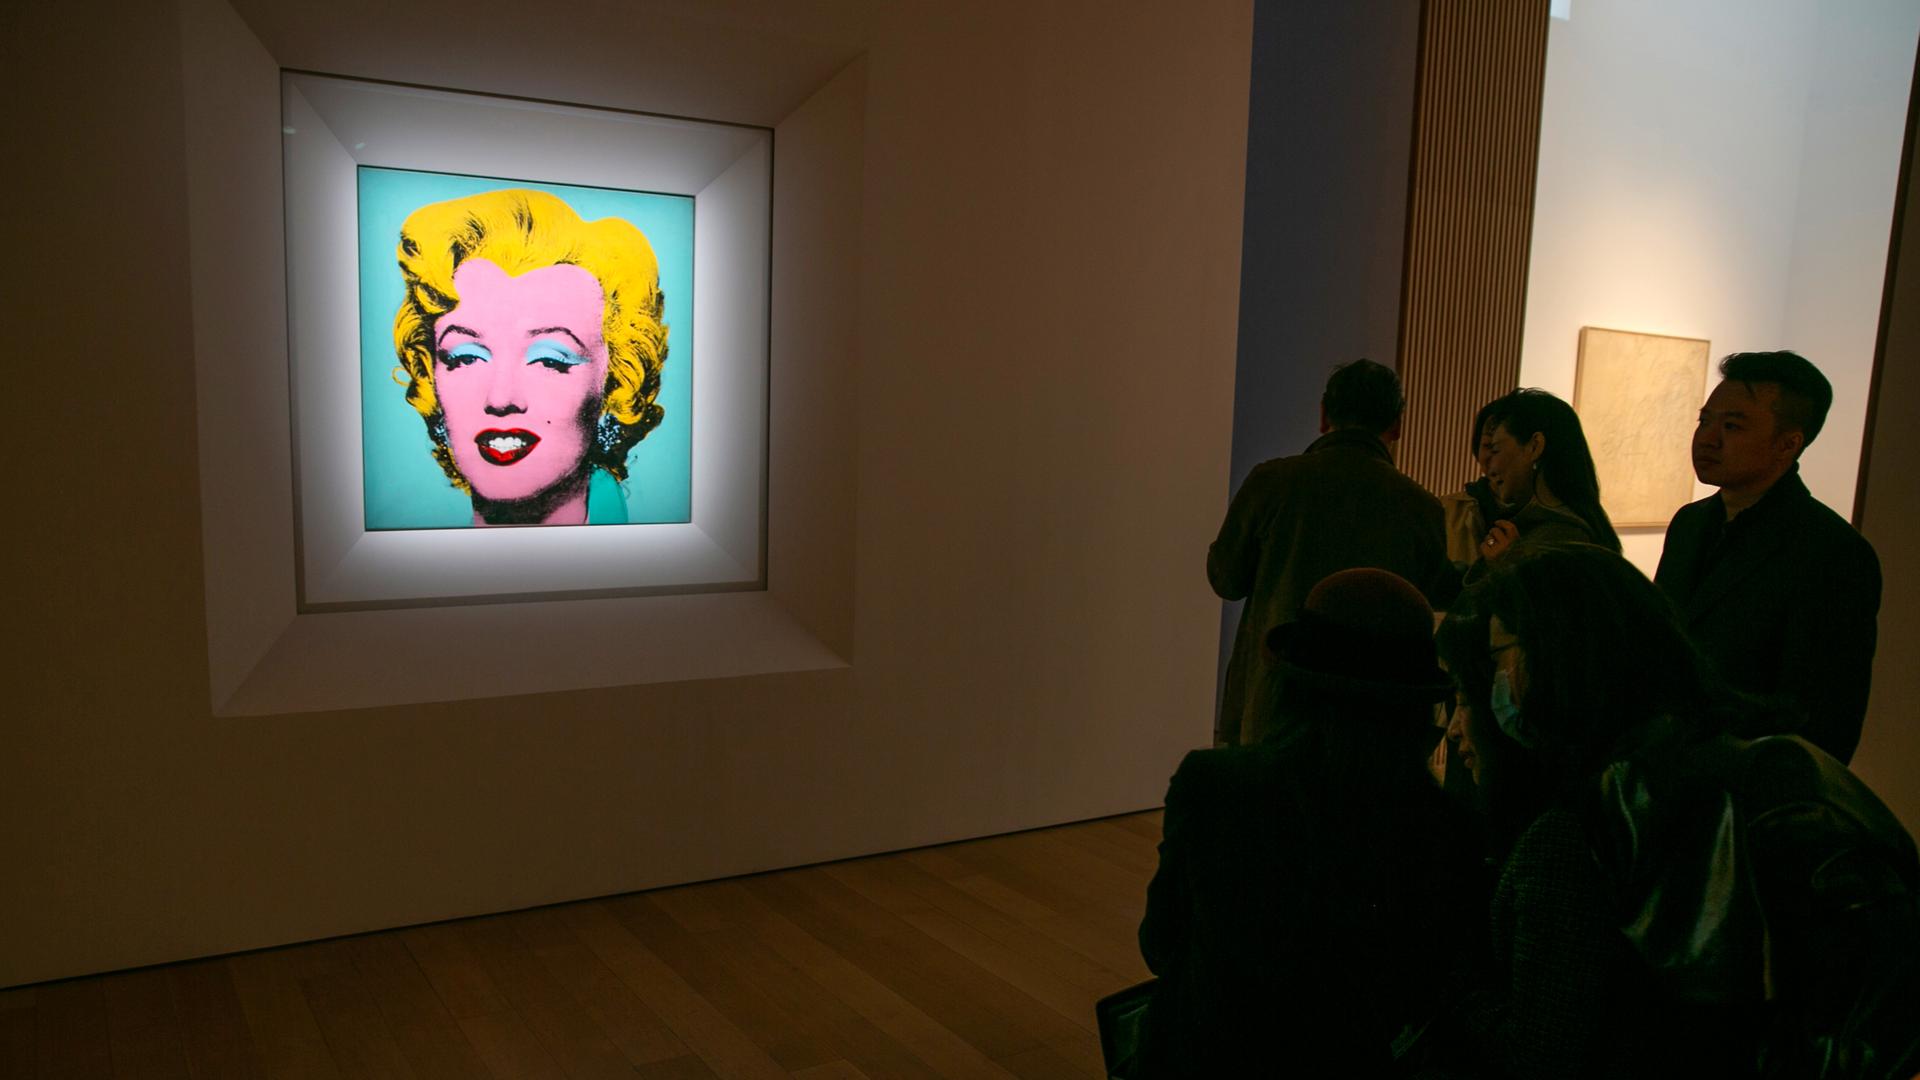 Das Gemälde von Andy Warhol aus dem Jahr 1964 hängt im Ausstellungsraum in New York.